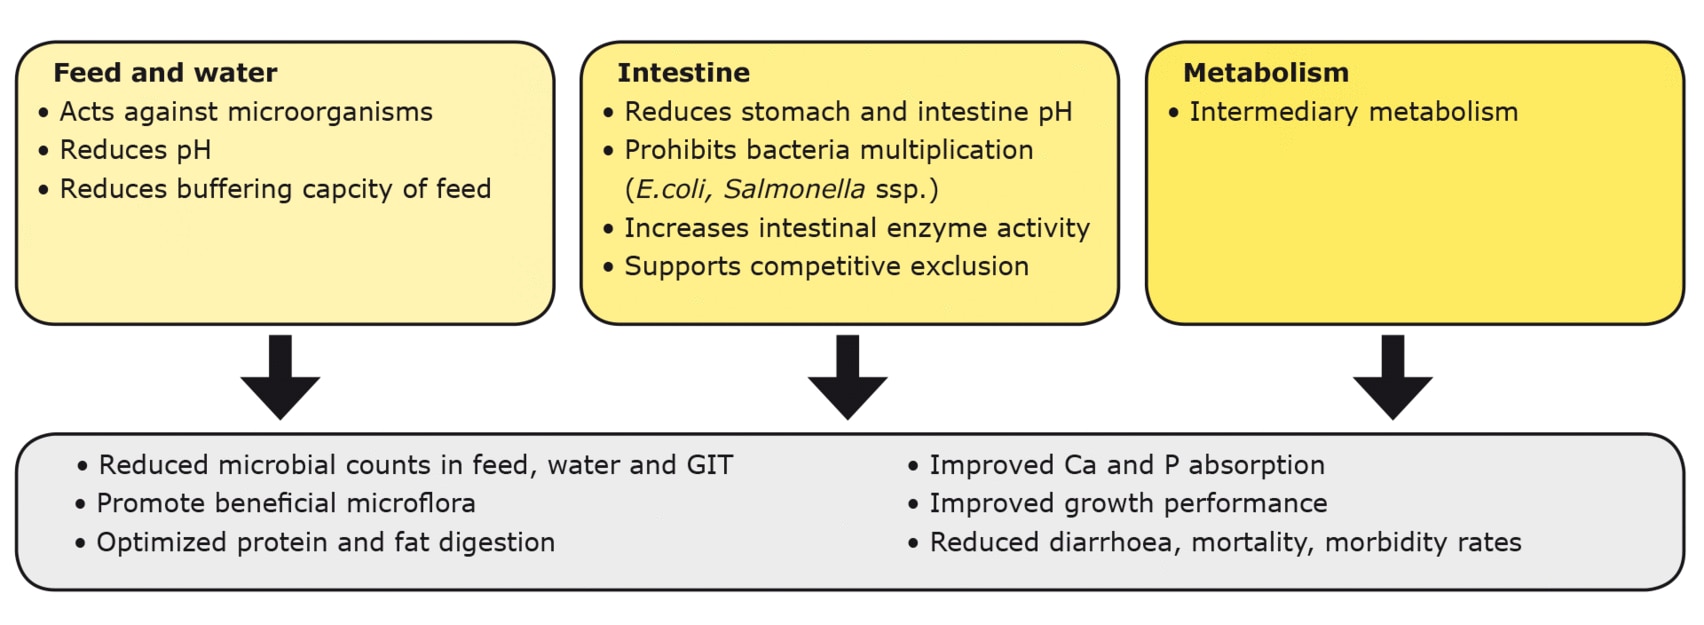 Figura 2. Mecanismos de ácidos orgánicos en el alimento, el agua, el tracto gastrointestinal y el metabolismo intermedio.